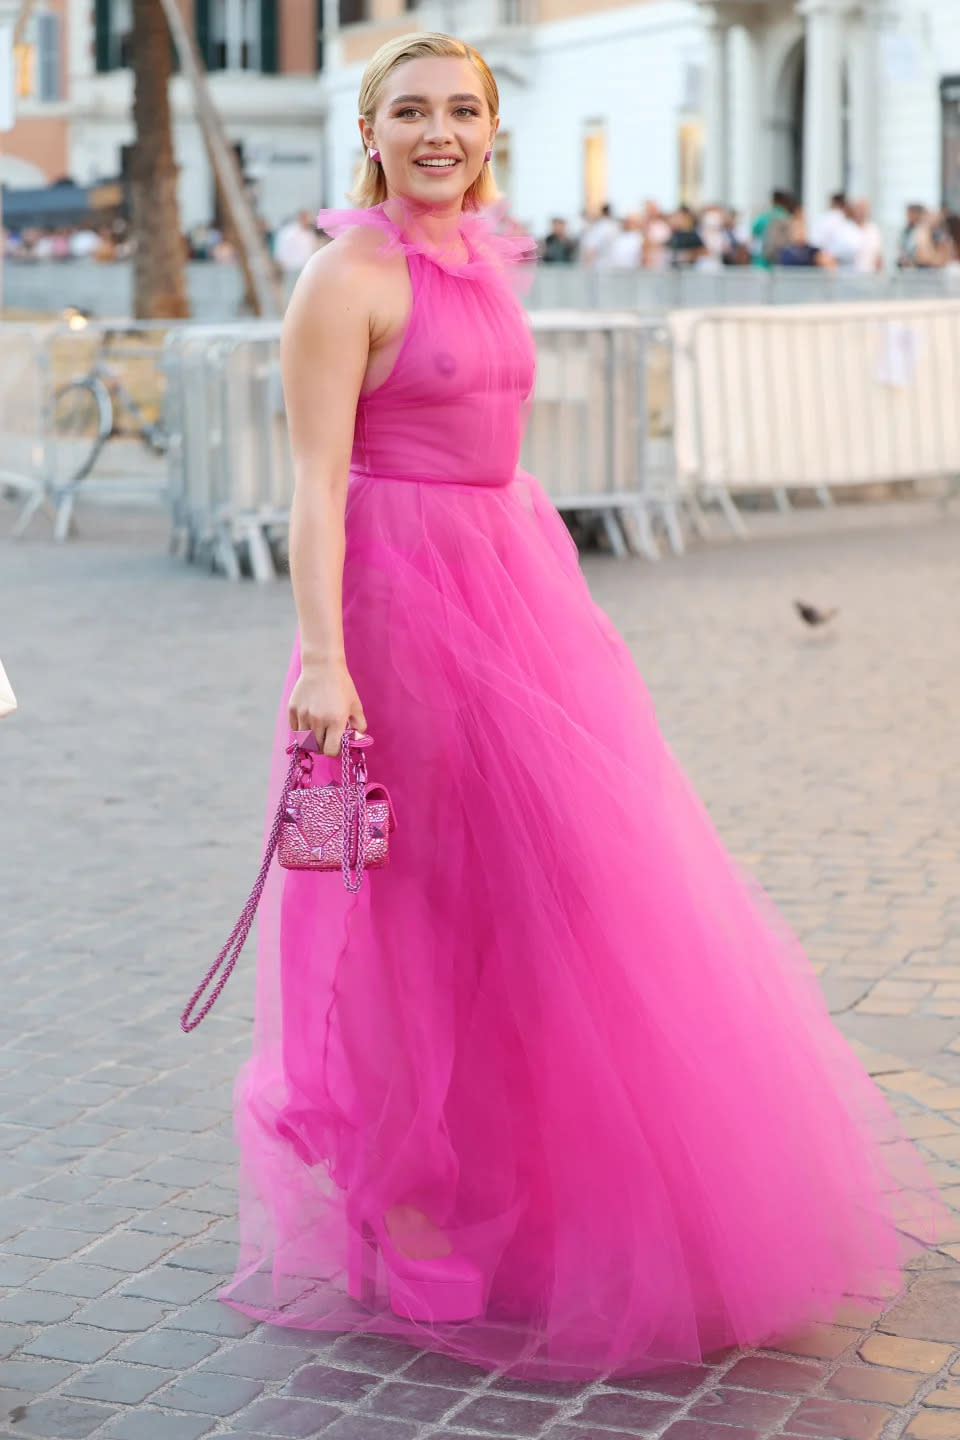 Ihr Valentino-Kleid, unter dem man ihre Br&#xfc;ste sehen konnte, l&#xf6;ste im Juli viele Diskussionen aus. (Bild: Getty Images)